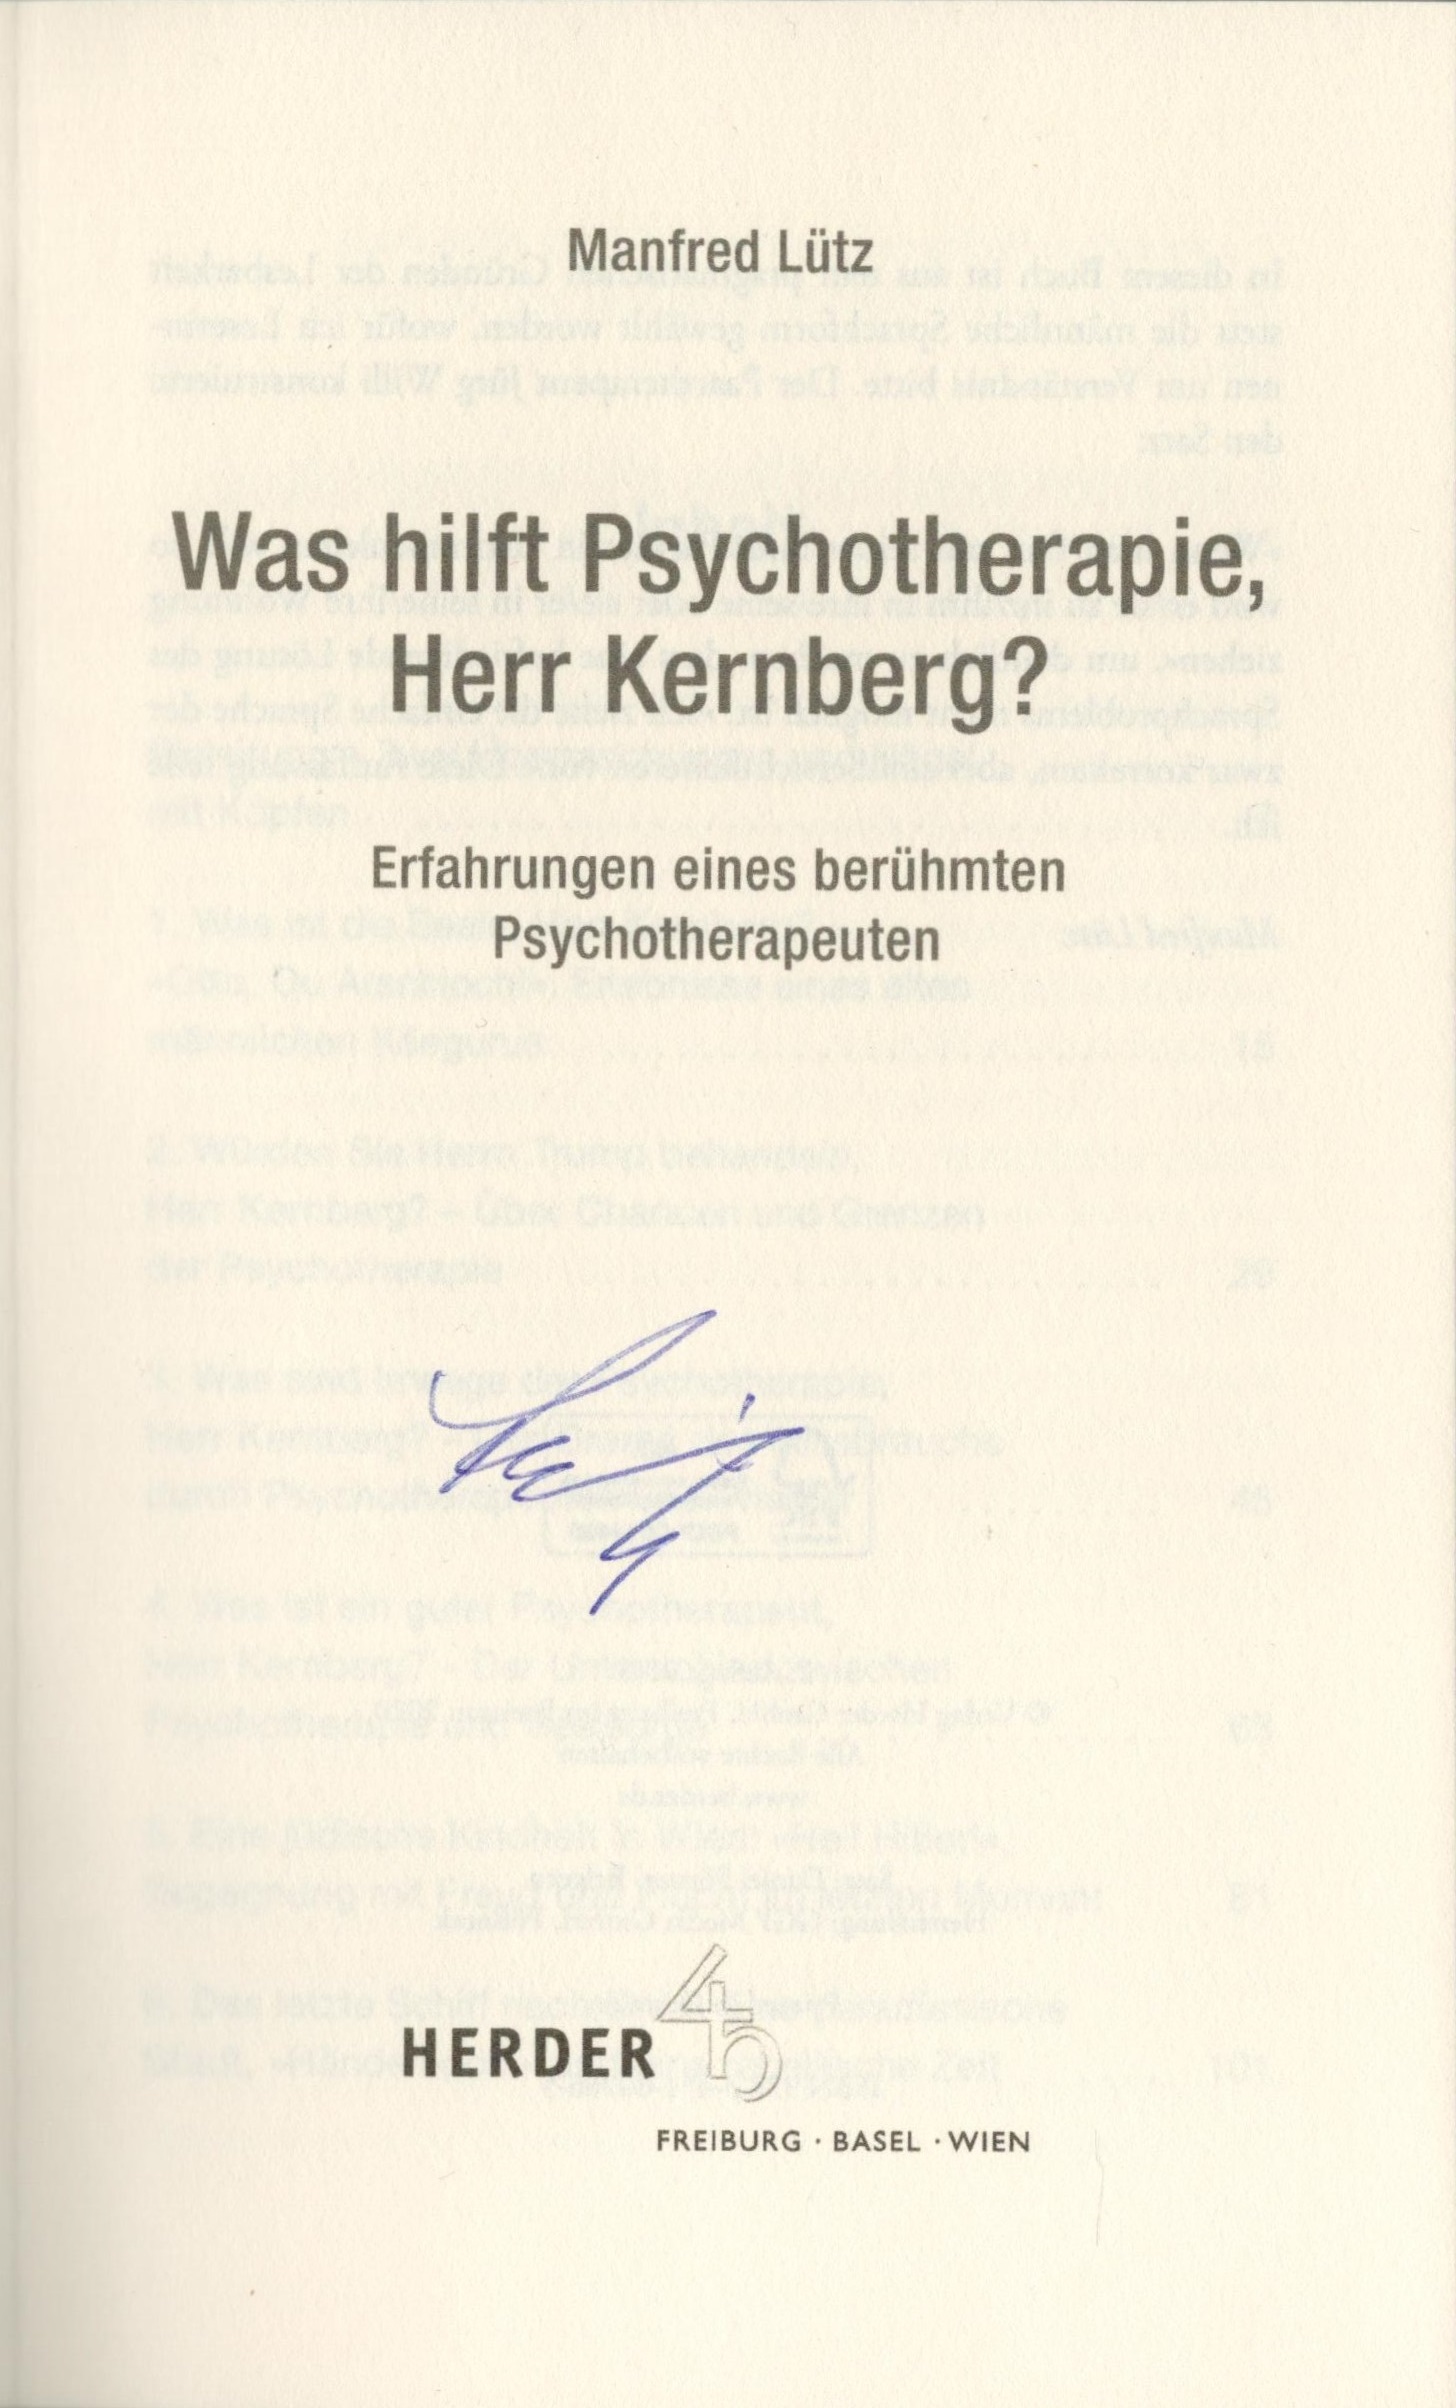 Was hilft Psychotherapie, Herr Kernberg? - Titelblatt mit Signatur